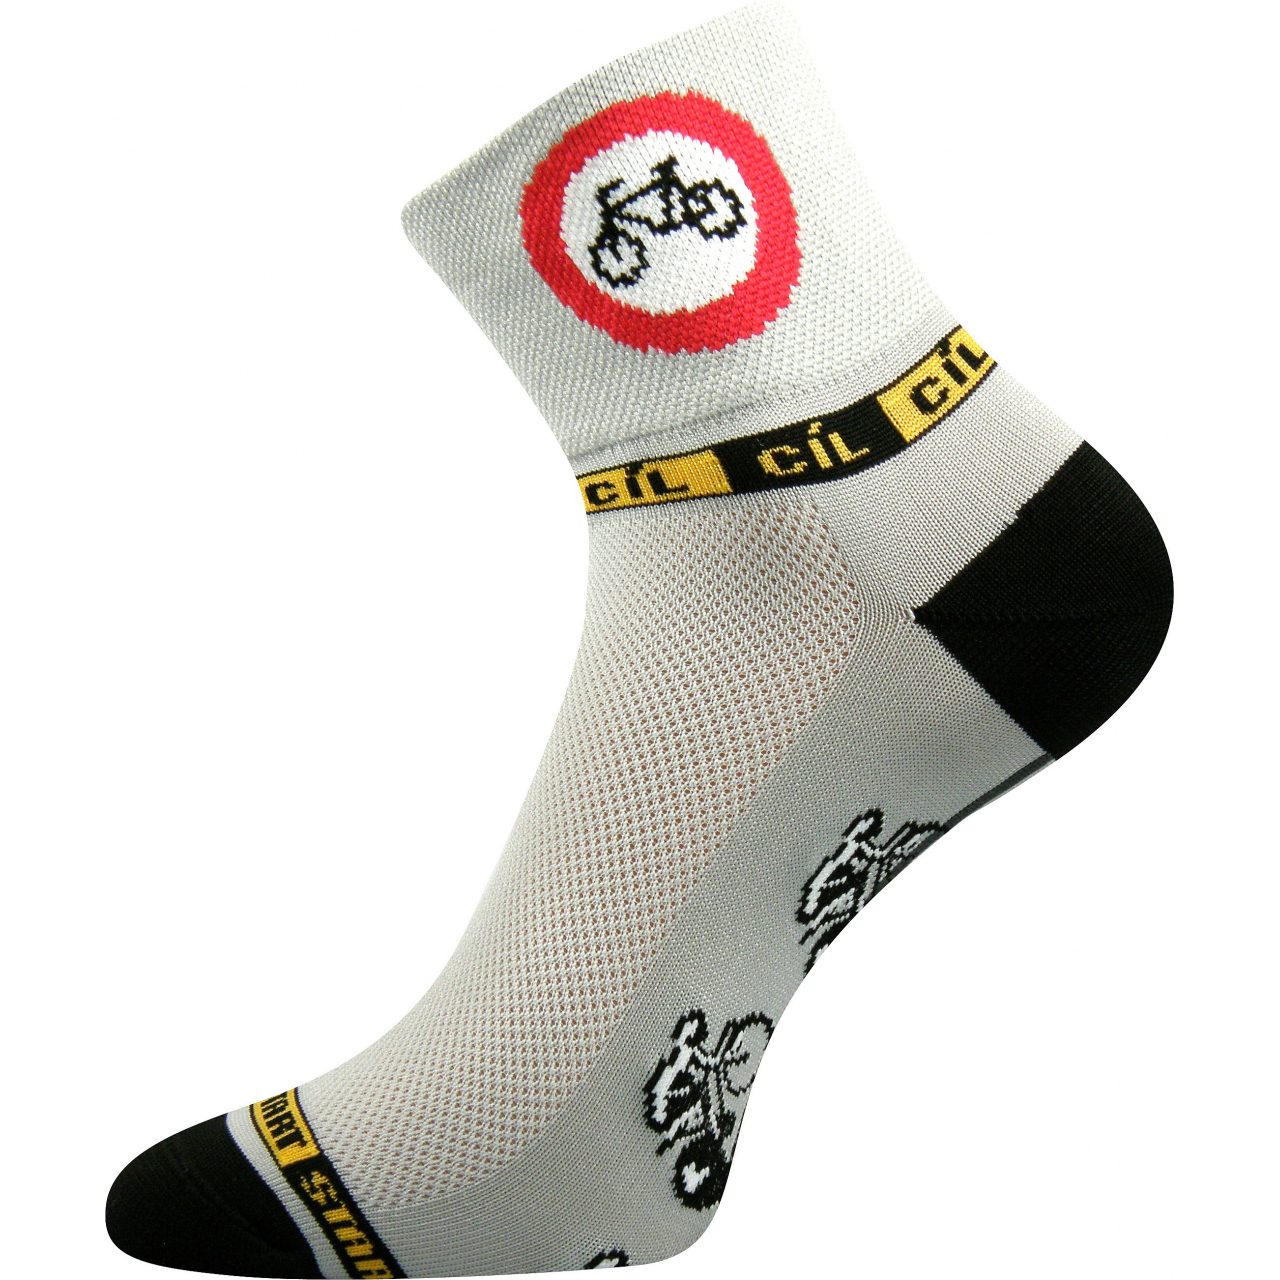 Ponožky sportovní unisex Voxx Ralf X Kolo - šedé-černé, 43-46